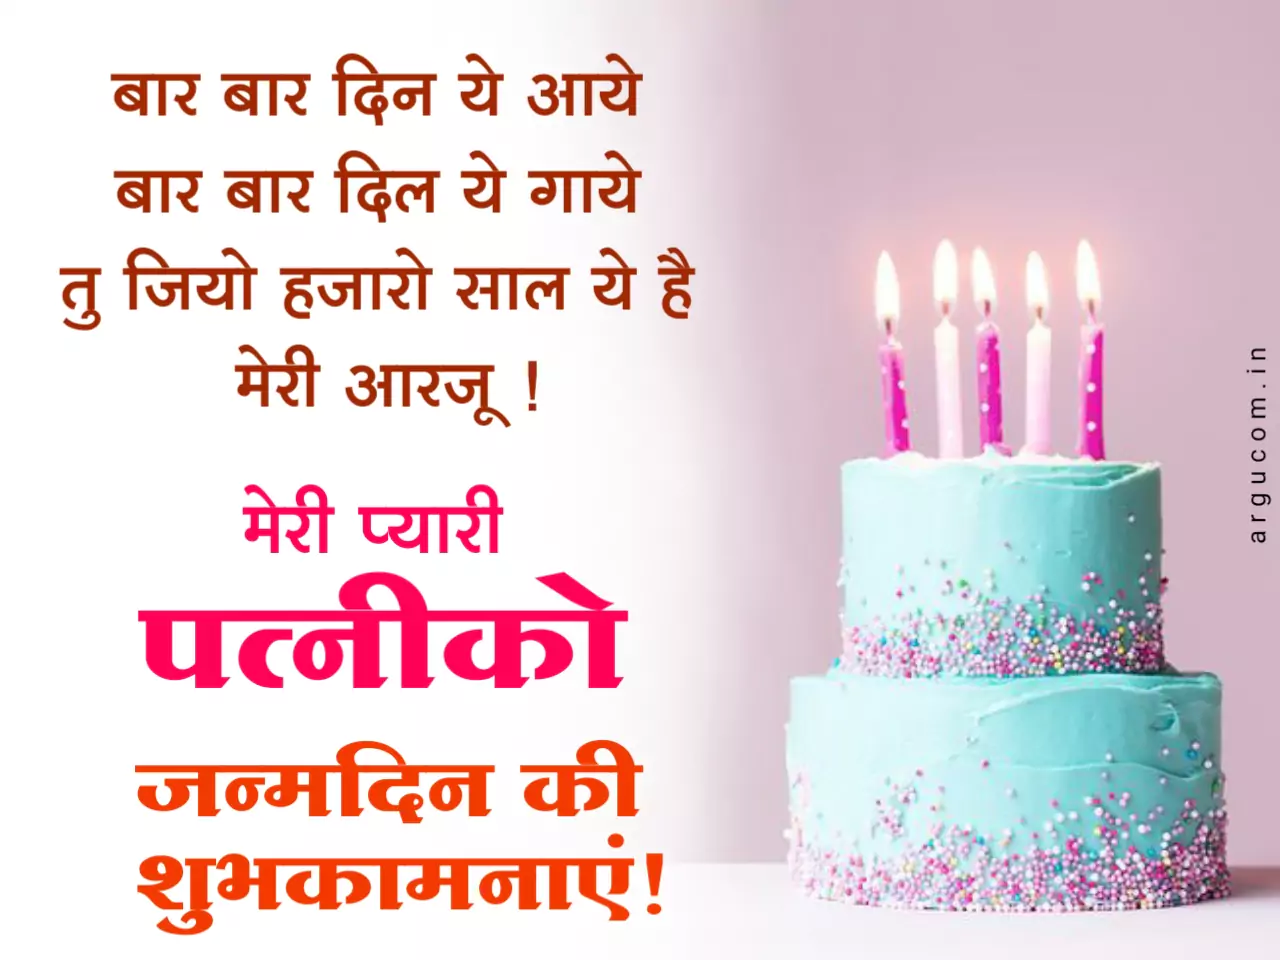 Happy birthday images for wife in hindi, पत्नी को जन्मदिन की शुभकामनाएं